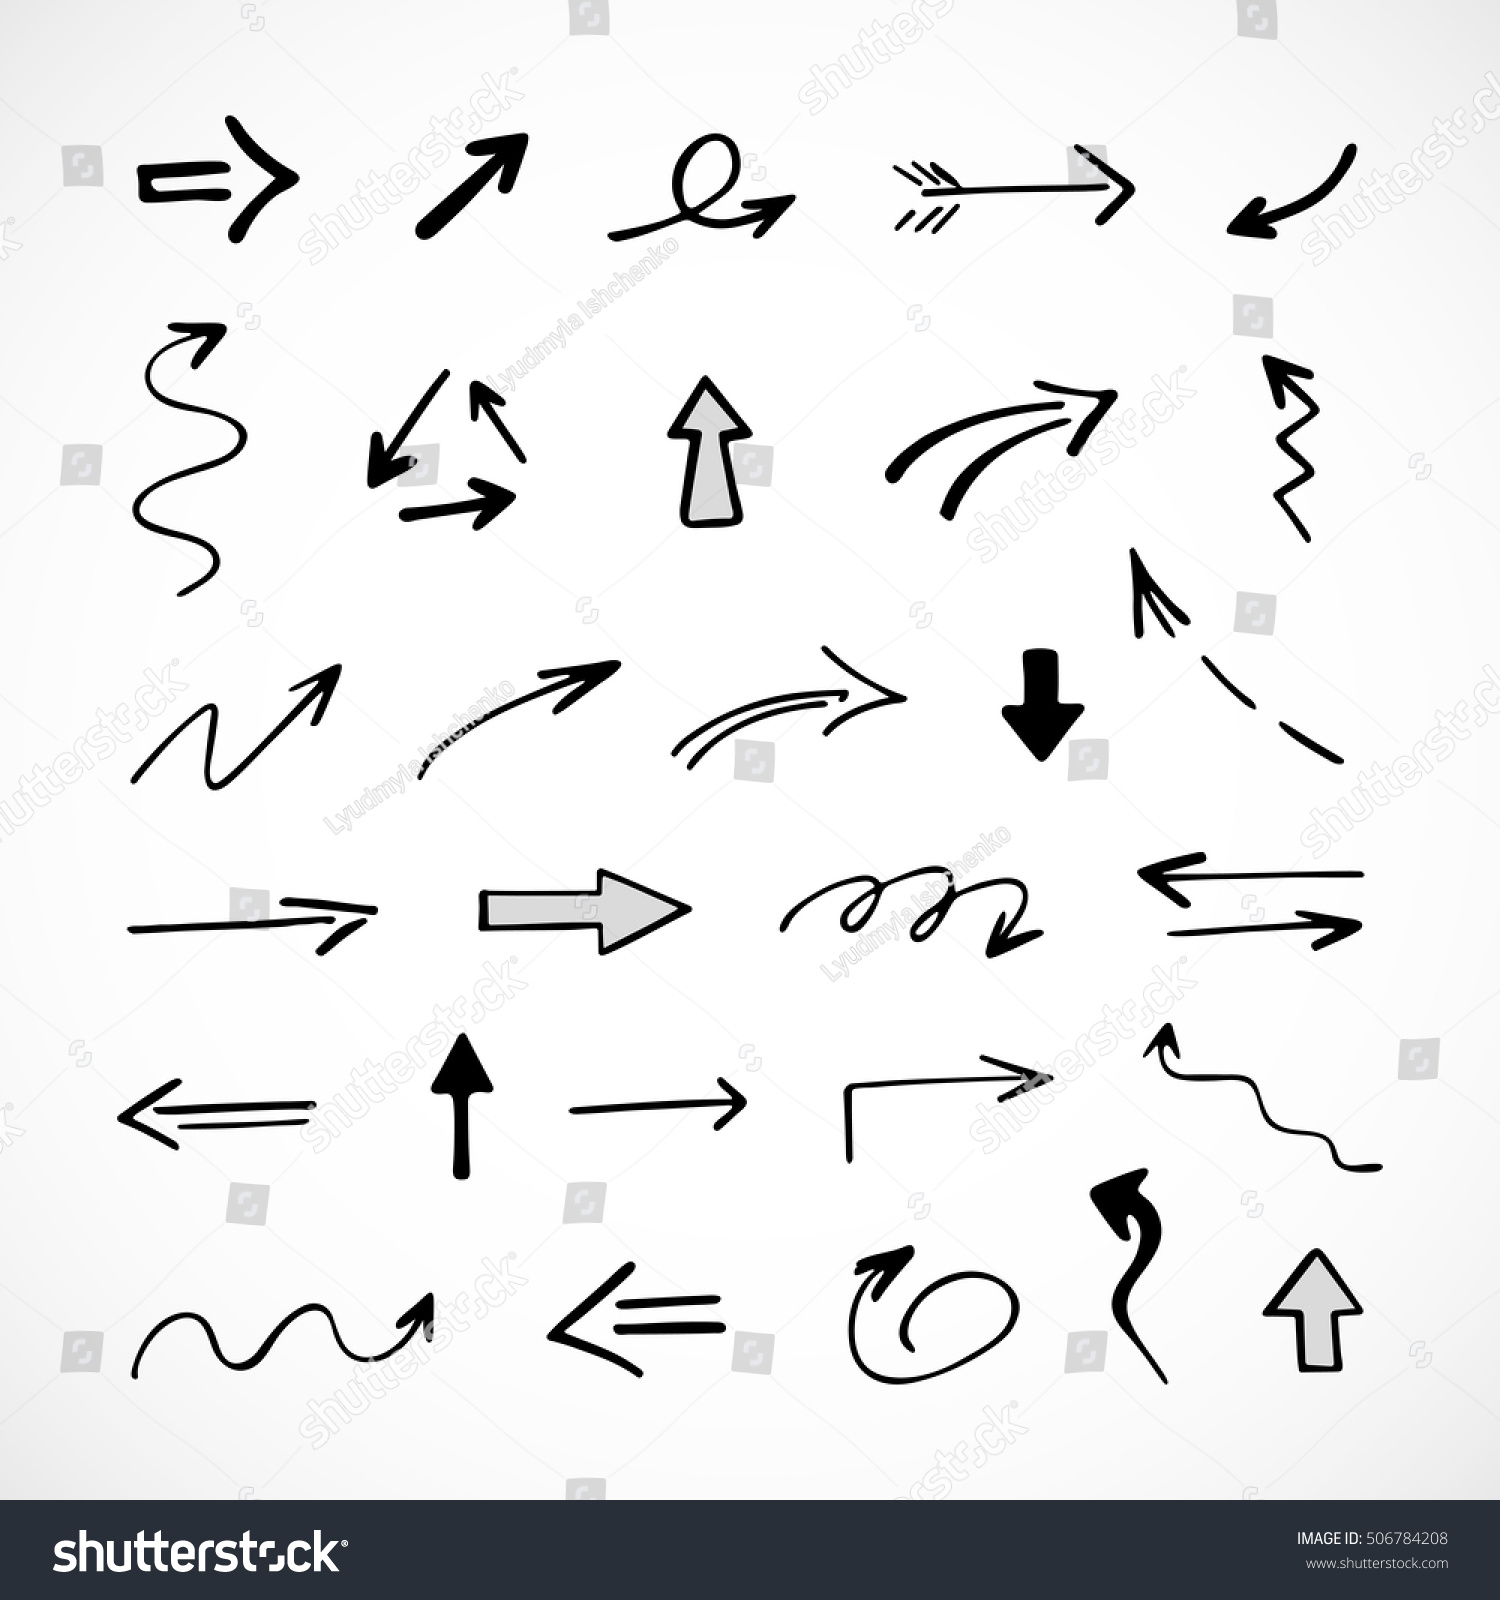 hand-drawn arrows, vector set #506784208